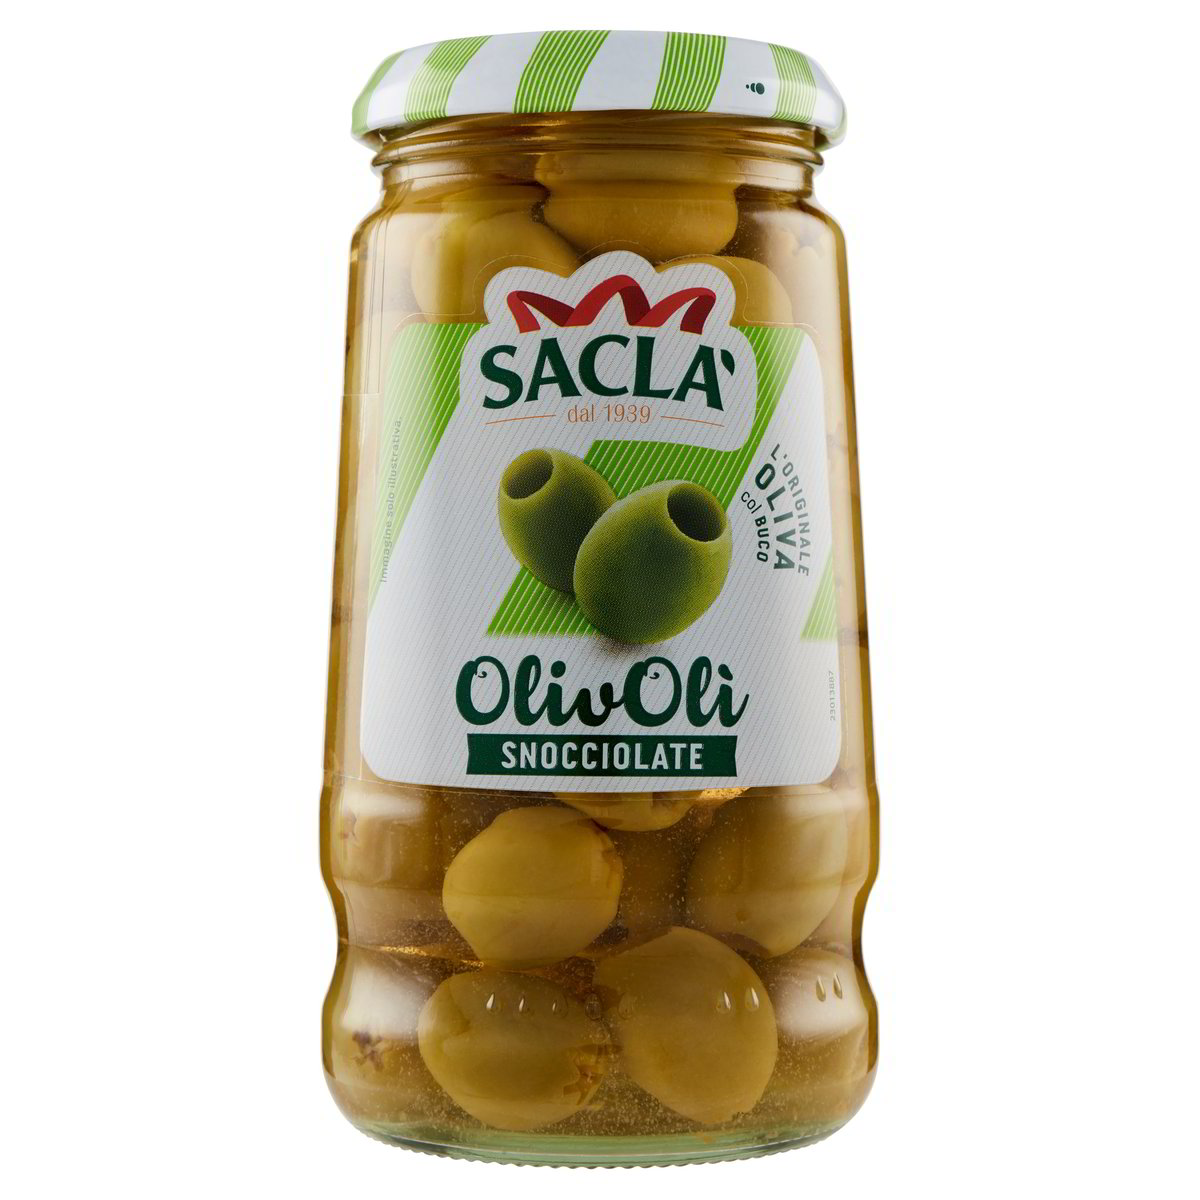 OLIVY SACLÁ ZELENÉ ve skle, bez pecky,,celé olivy v nálevu,120 g